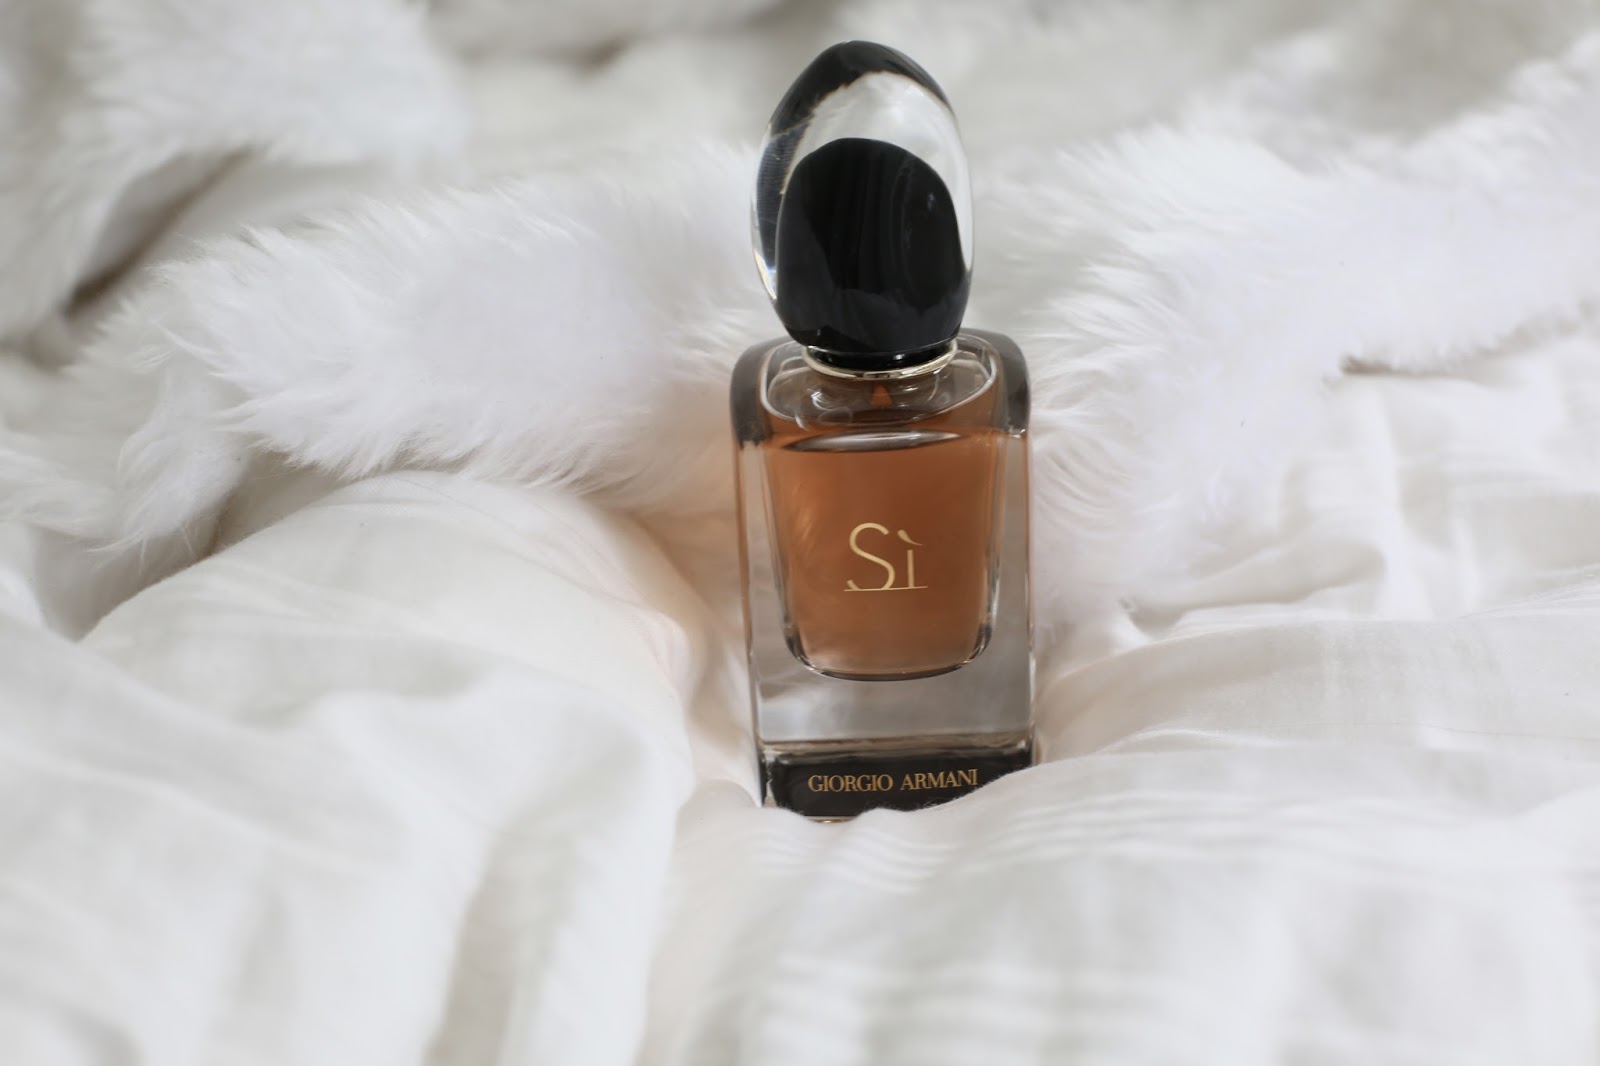 Giorgio Armani's Si Eau Du Parfum